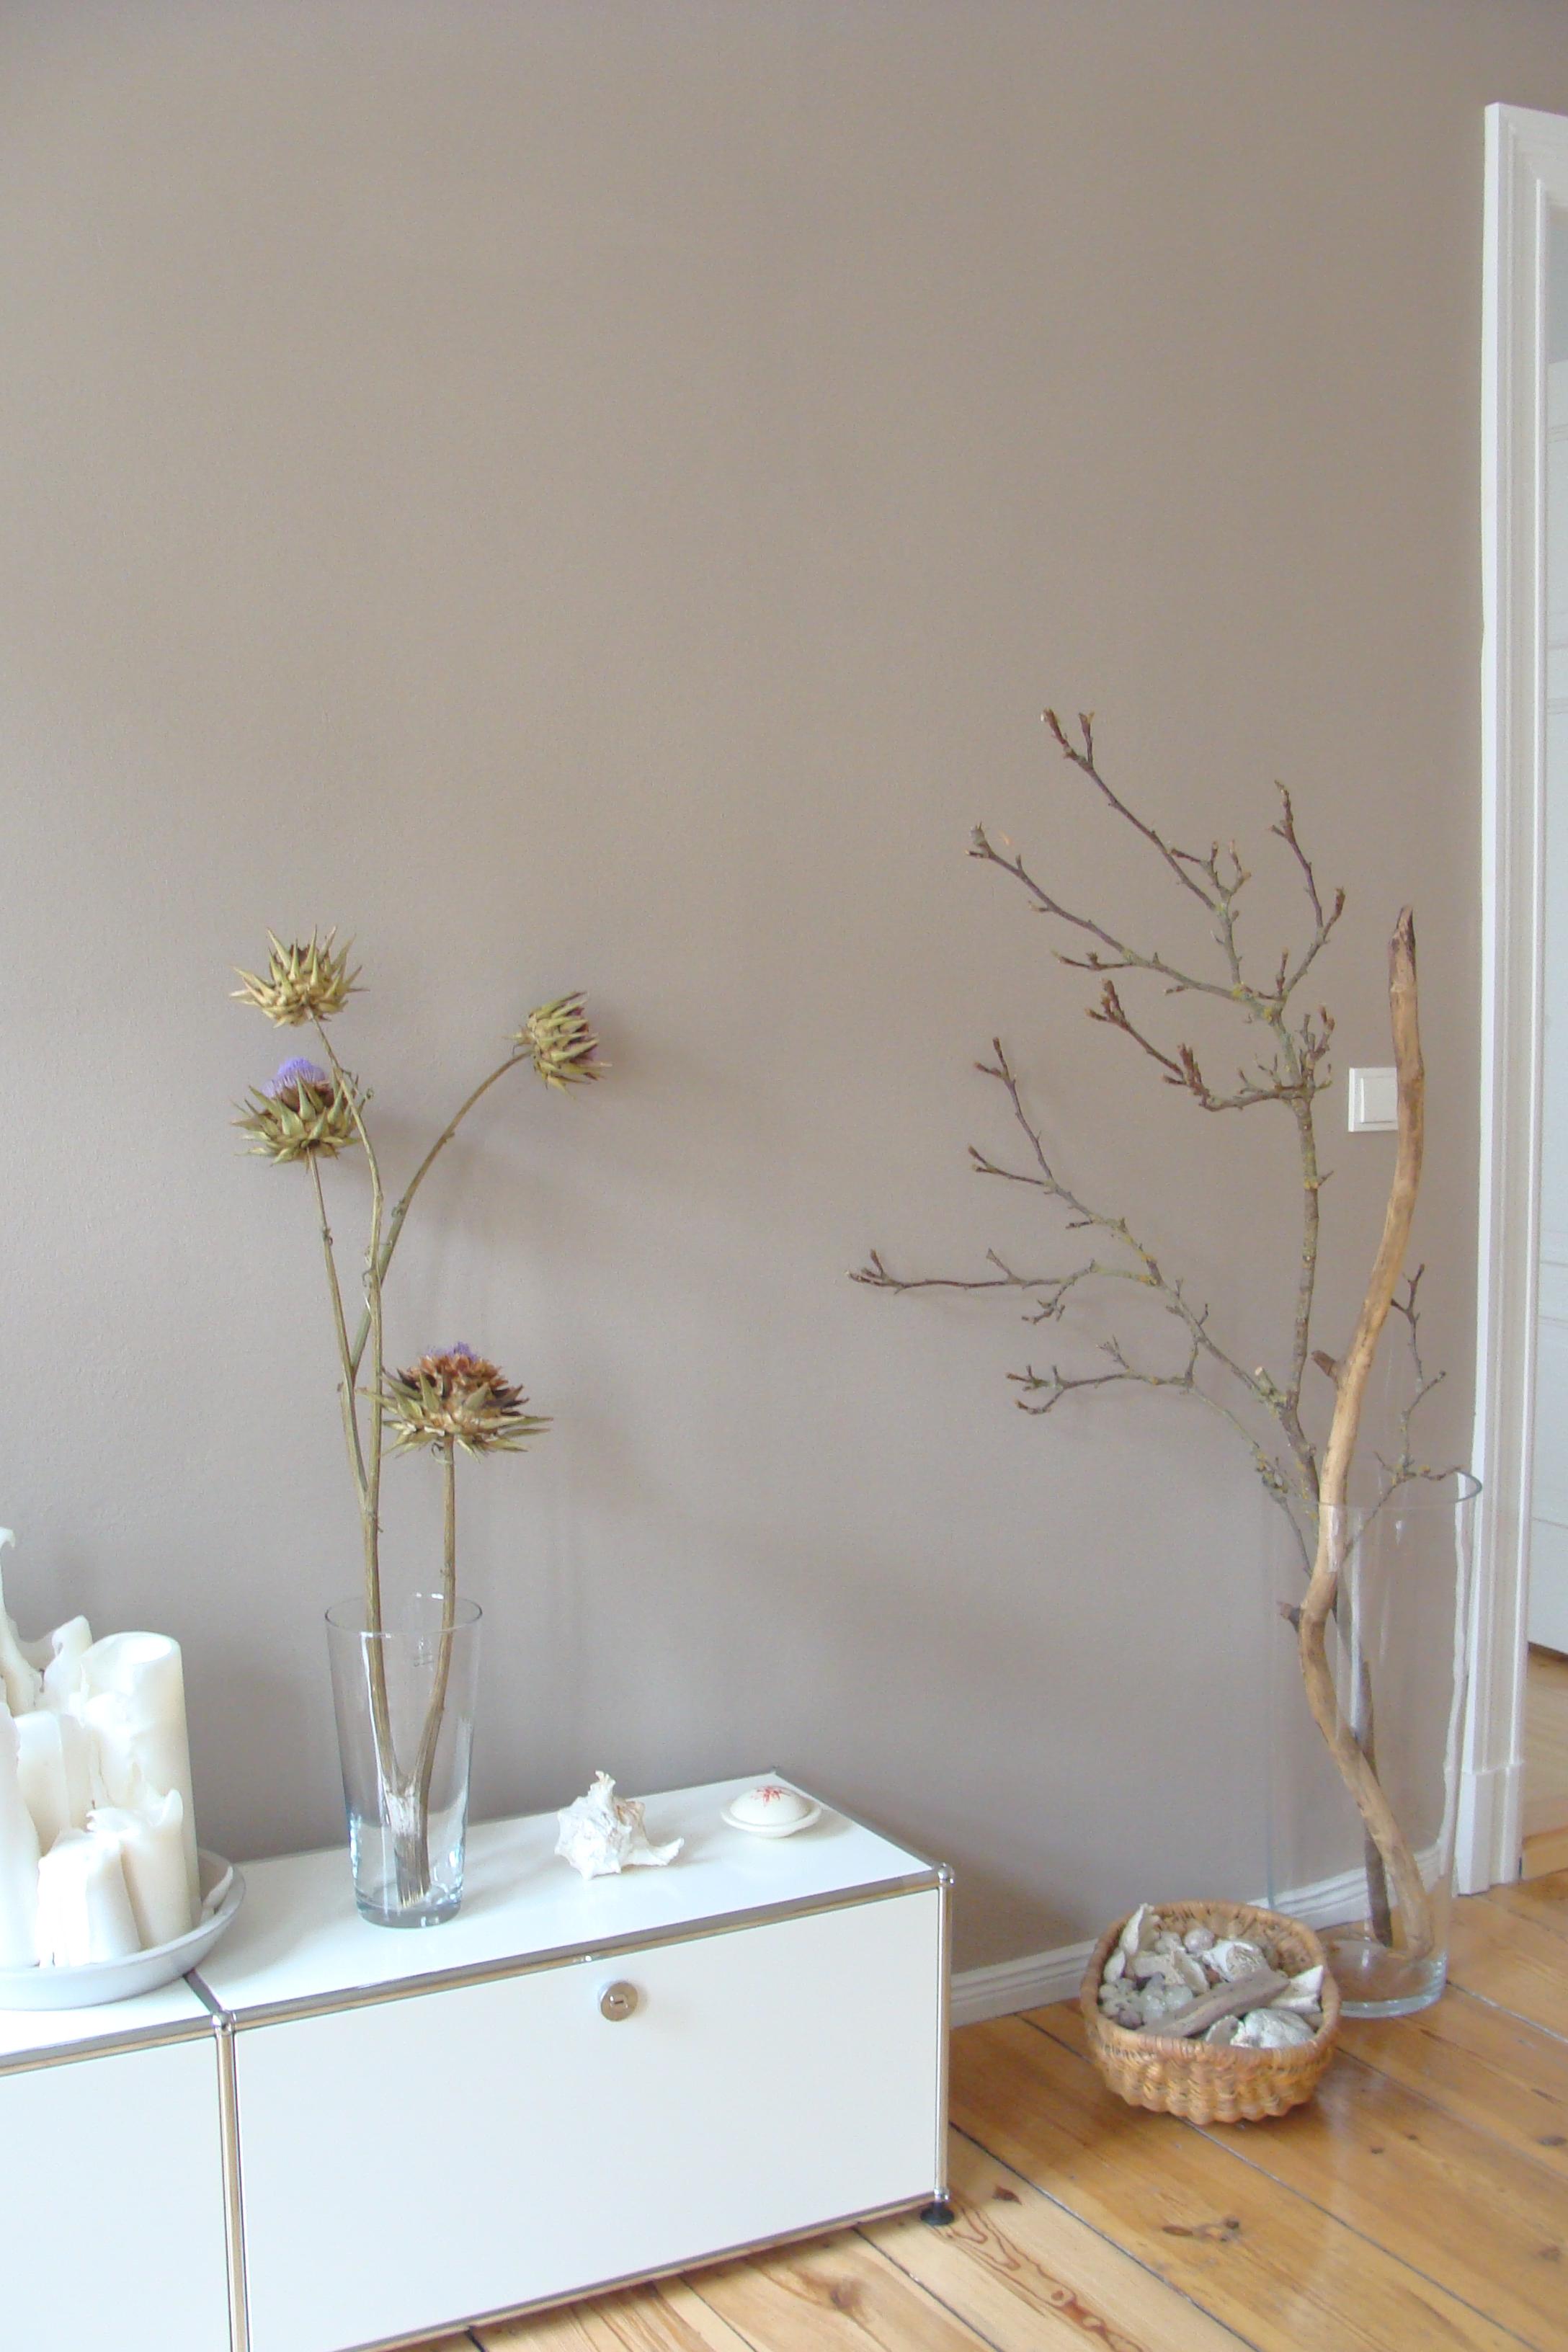 Pflanzendeko vor sandfarbener Wand #wohnzimmer #pflanzendeko ©Mareike Kühn Interior Stylist & Visual Merchandiser